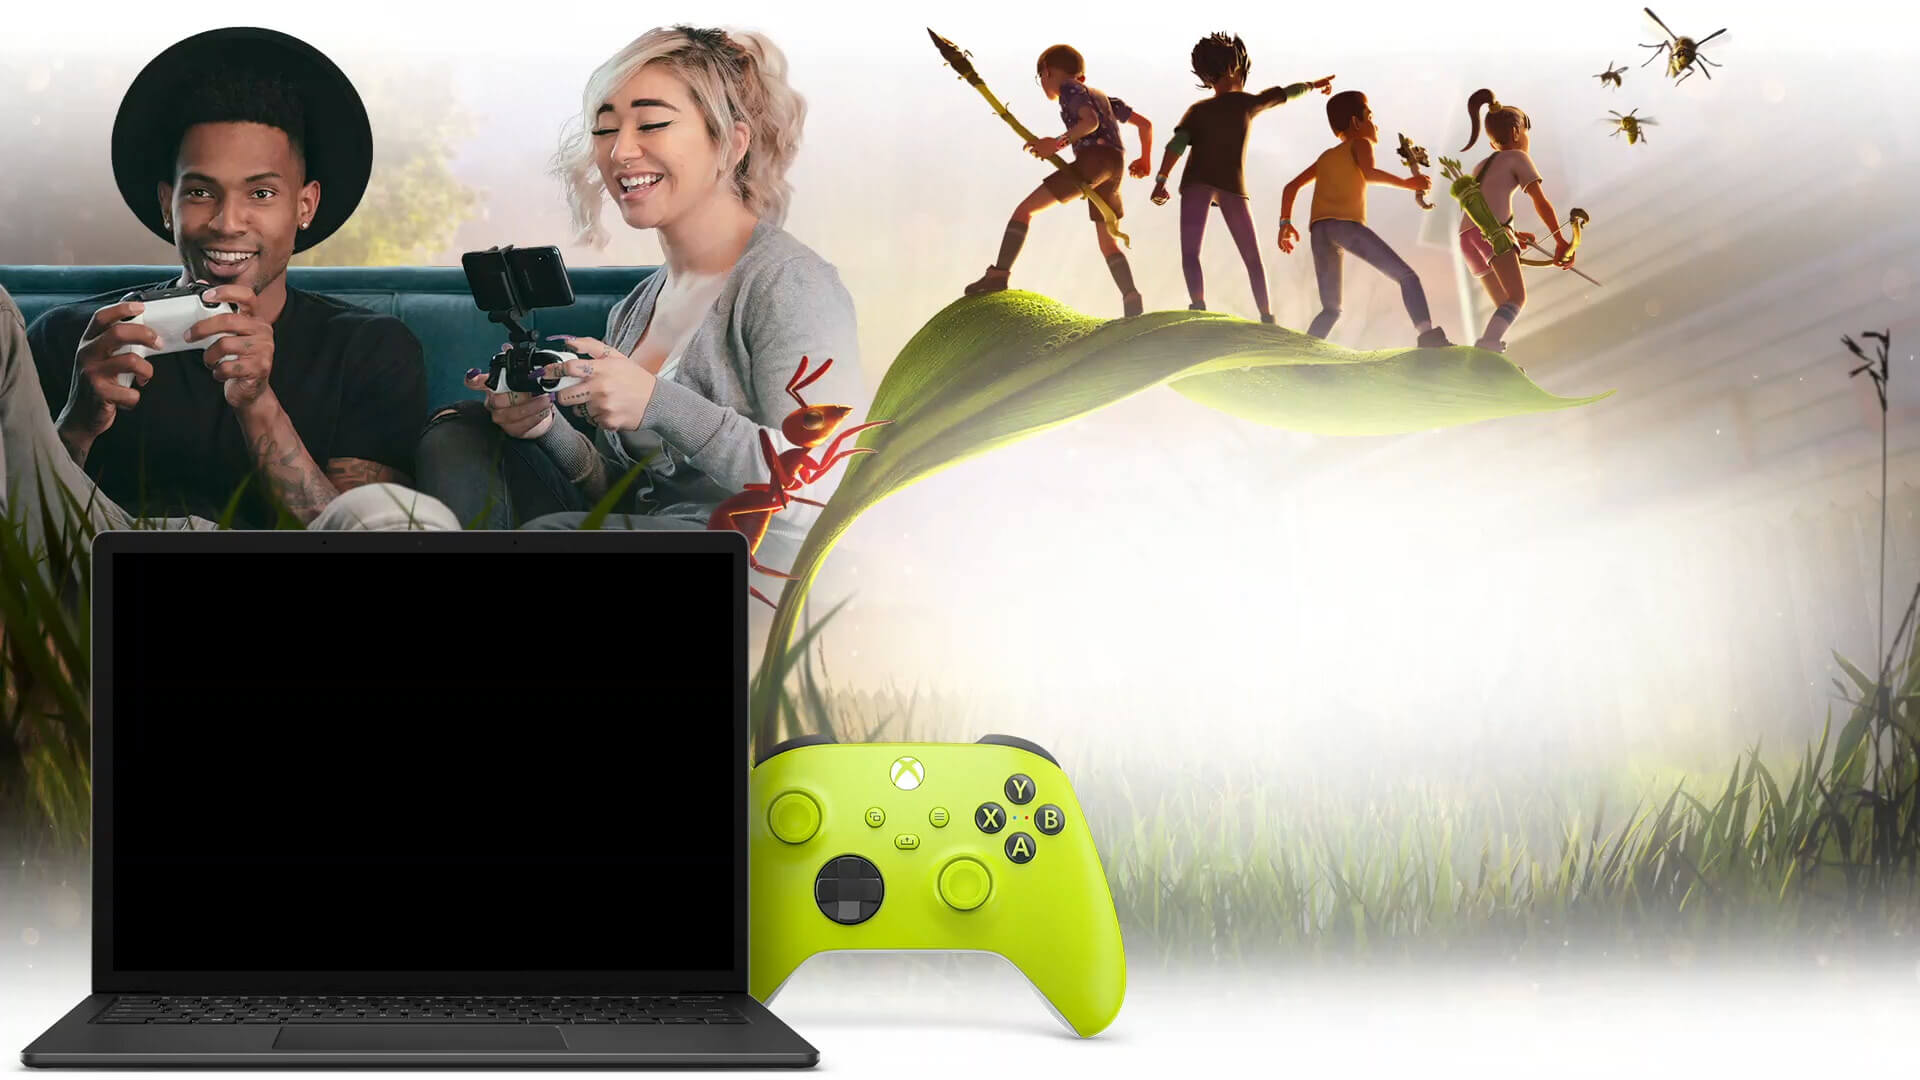 Yeni Logitech ve Tencent el cihazında kullanılabilecek hizmetlerden biri olan Xbox Cloud Gaming aracılığıyla Grounded'ı mutlu bir şekilde oynayan iki oyuncu